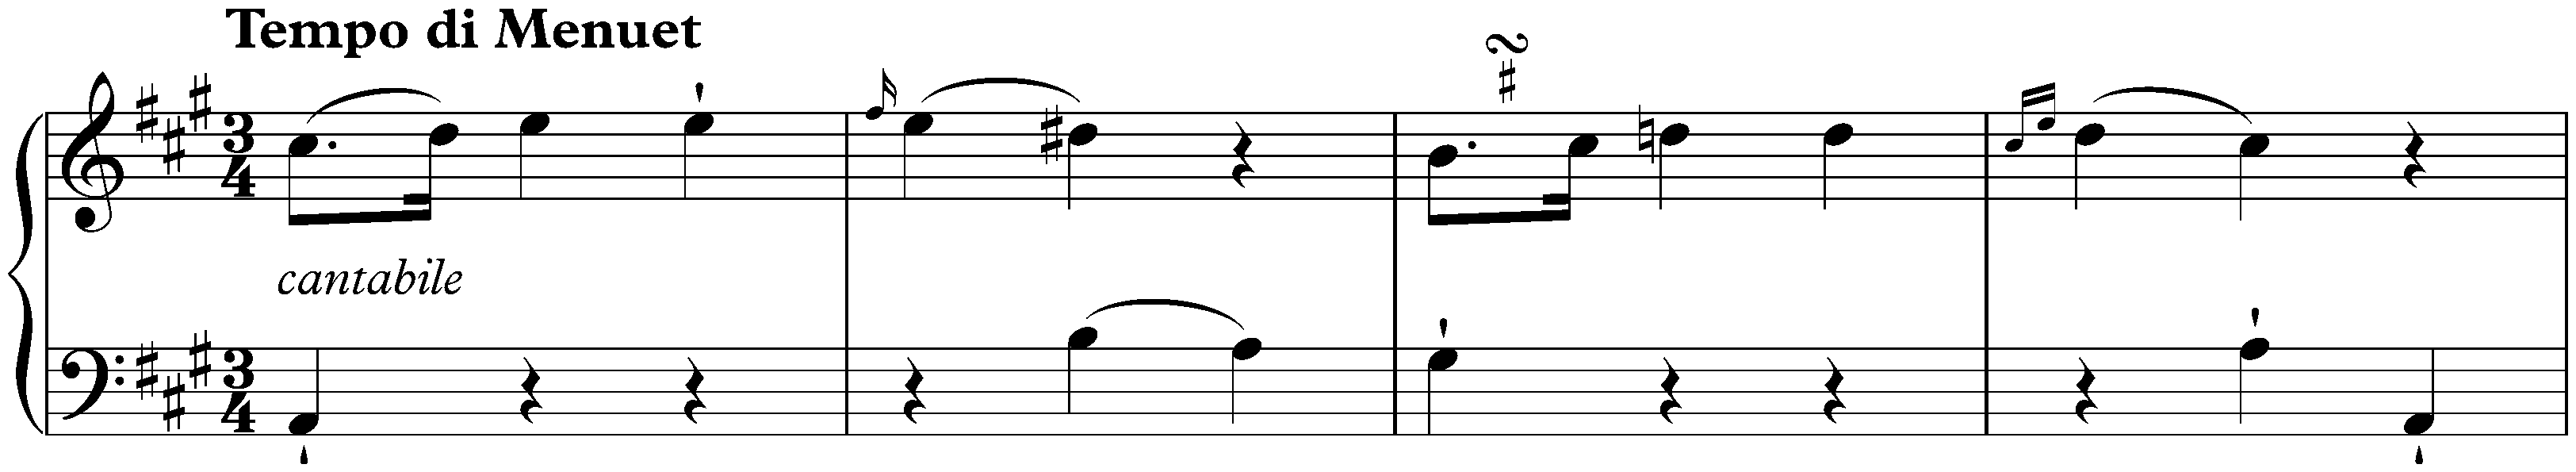 Sonata in A major, Hob. XVI:30; 3. Tempo di Menuet